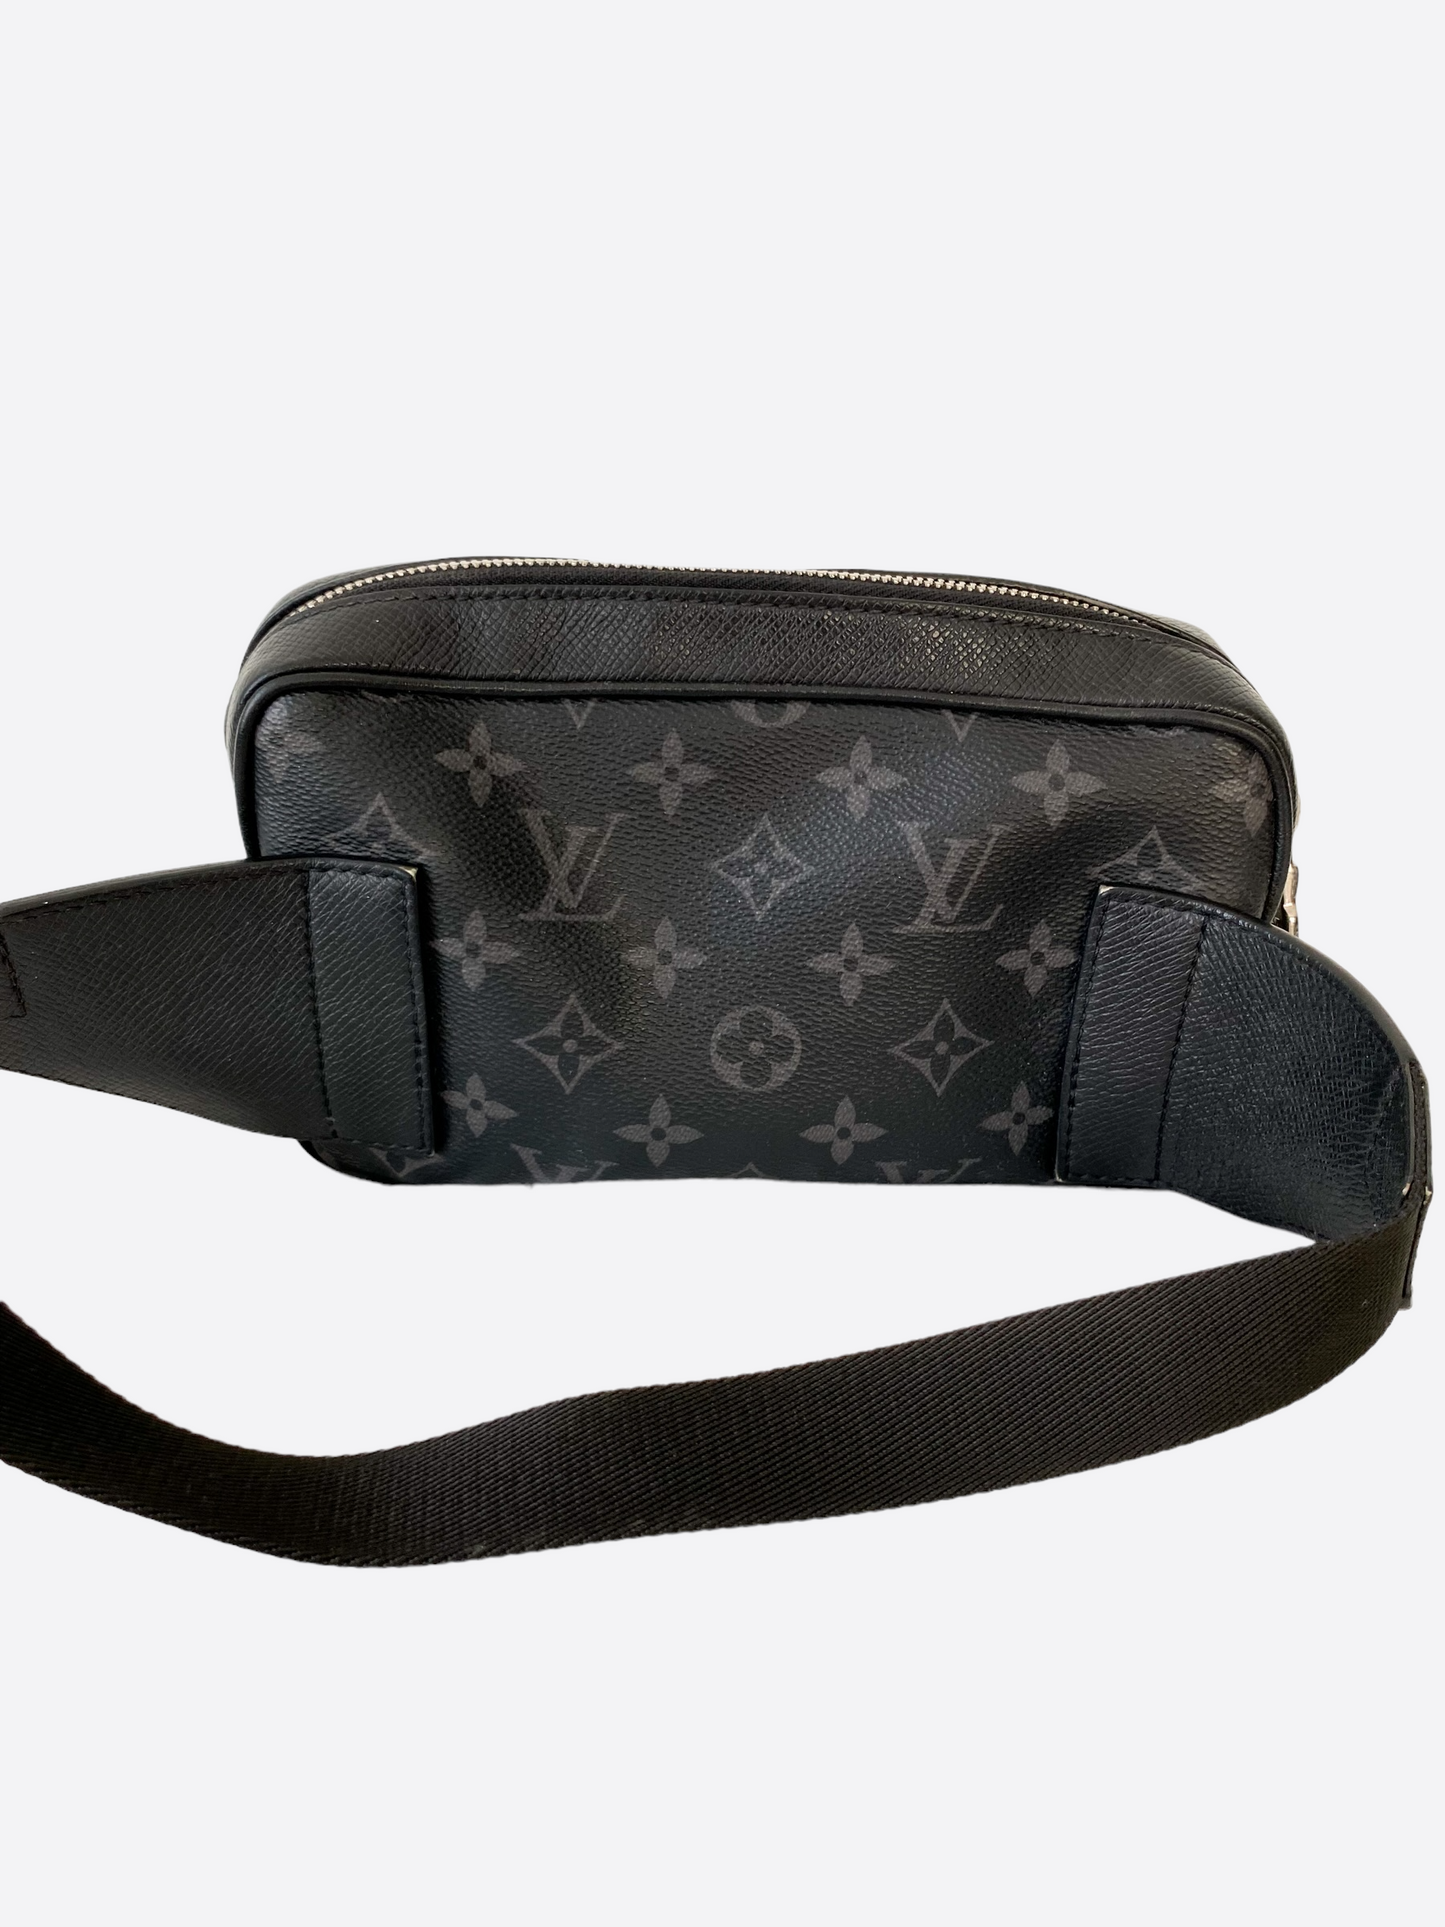 Louis Vuitton® Golf Bag Eclipse. Size